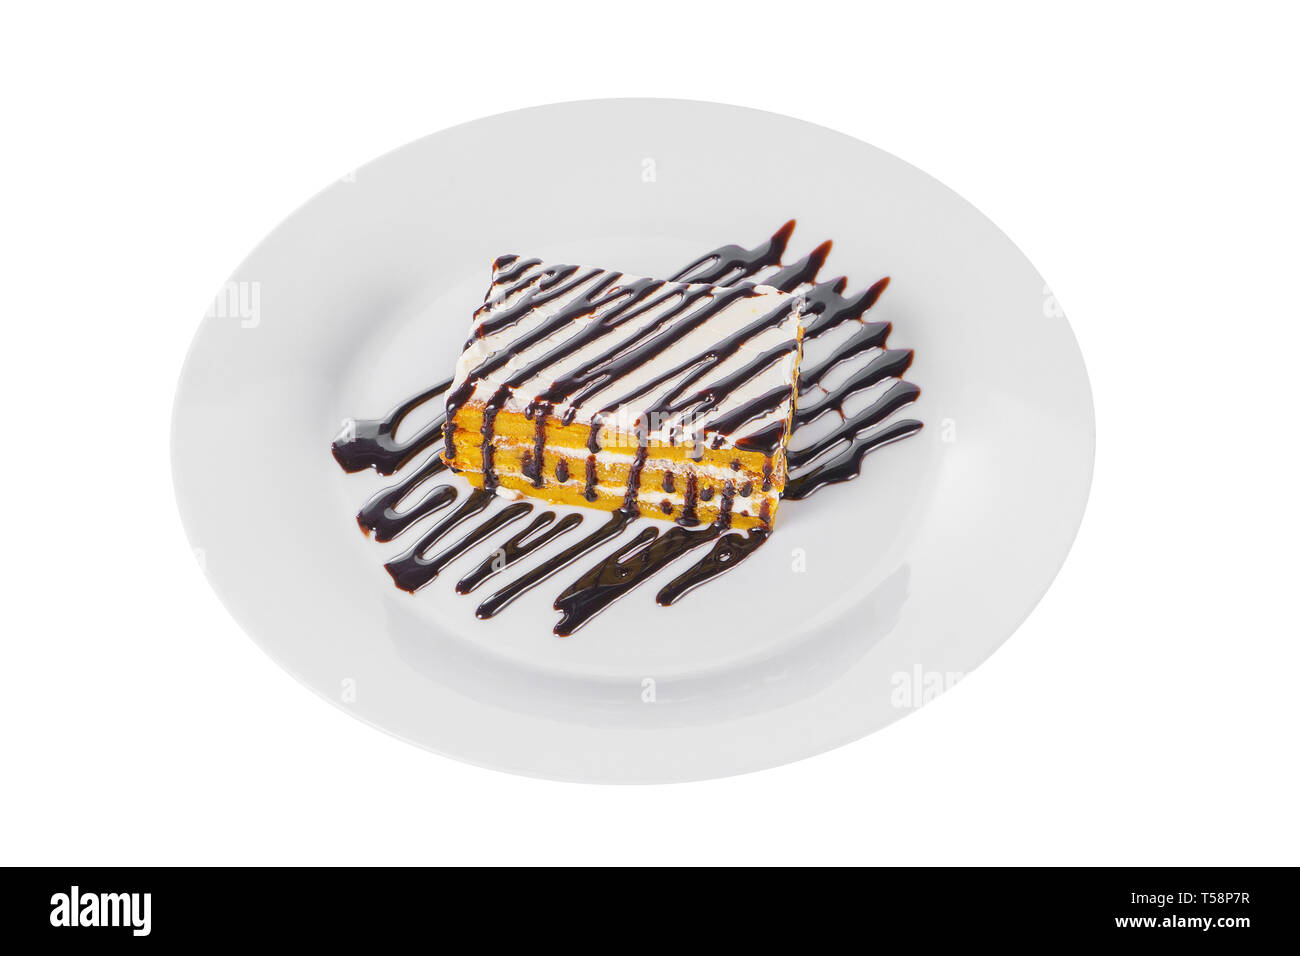 Tarte carotte biscuit avec de la crème et chocolat topping, servi sur un plateau isolé sur fond blanc. Dessert pour un menu dans un café, restaurant, café sho Banque D'Images